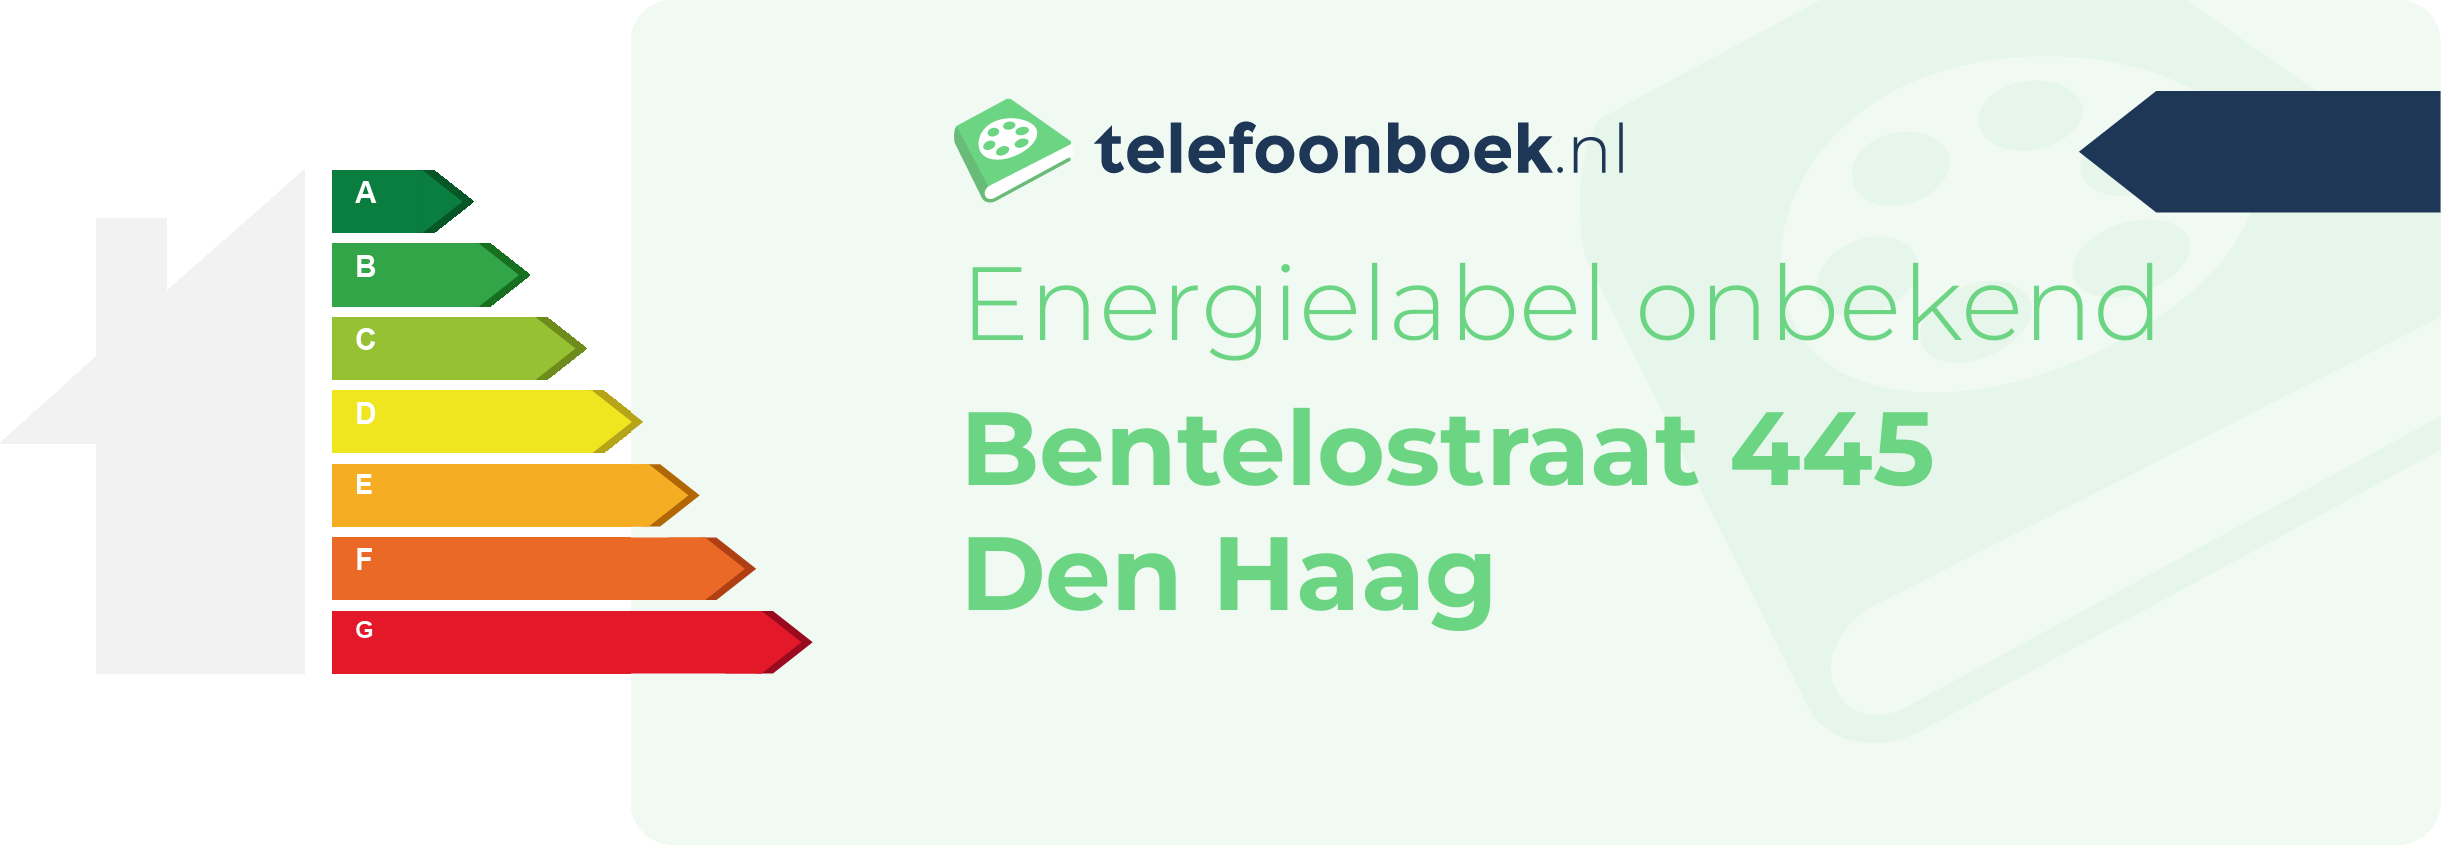 Energielabel Bentelostraat 445 Den Haag